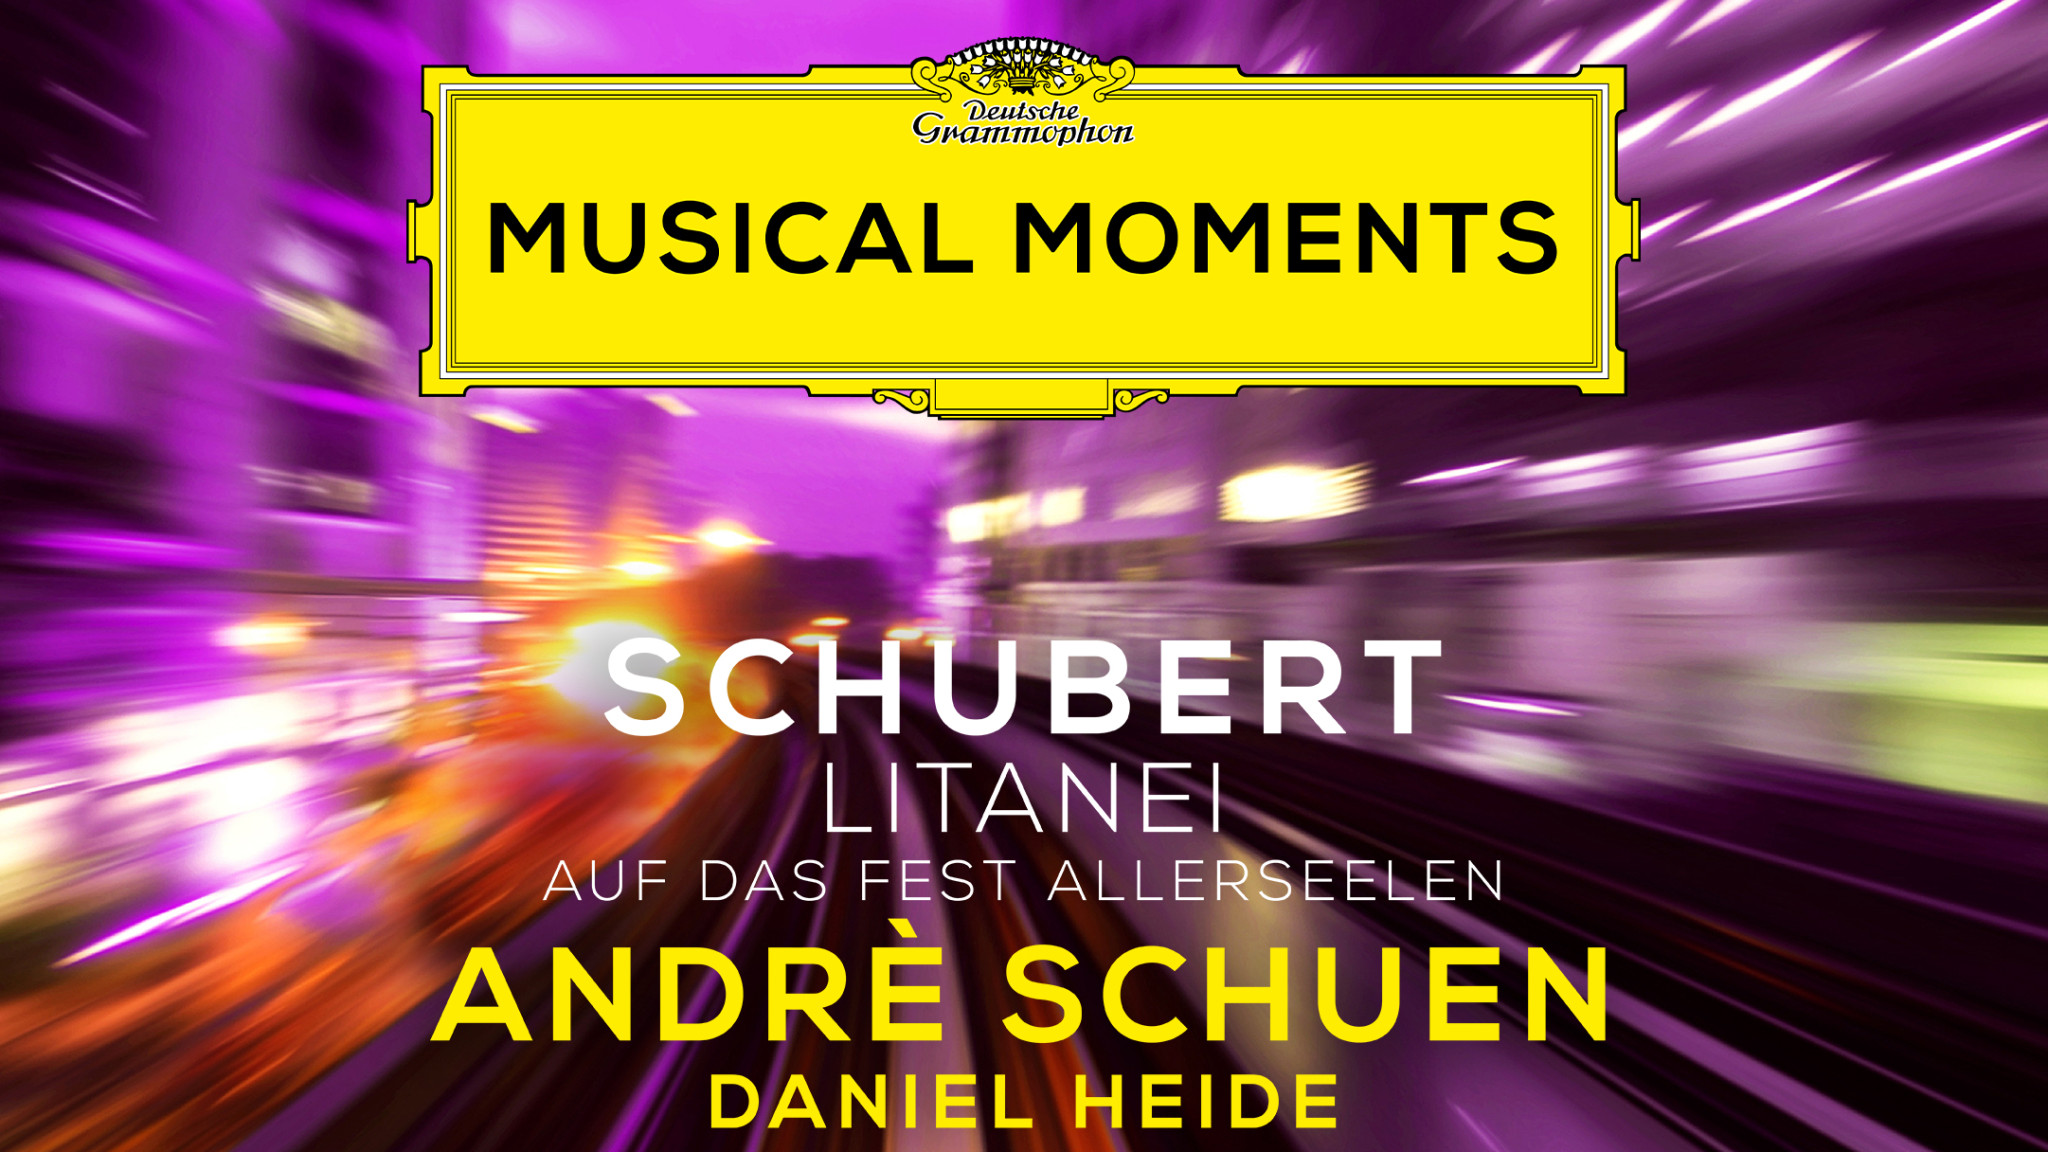 Musical Moments – Andrè Schuen sings Schubert